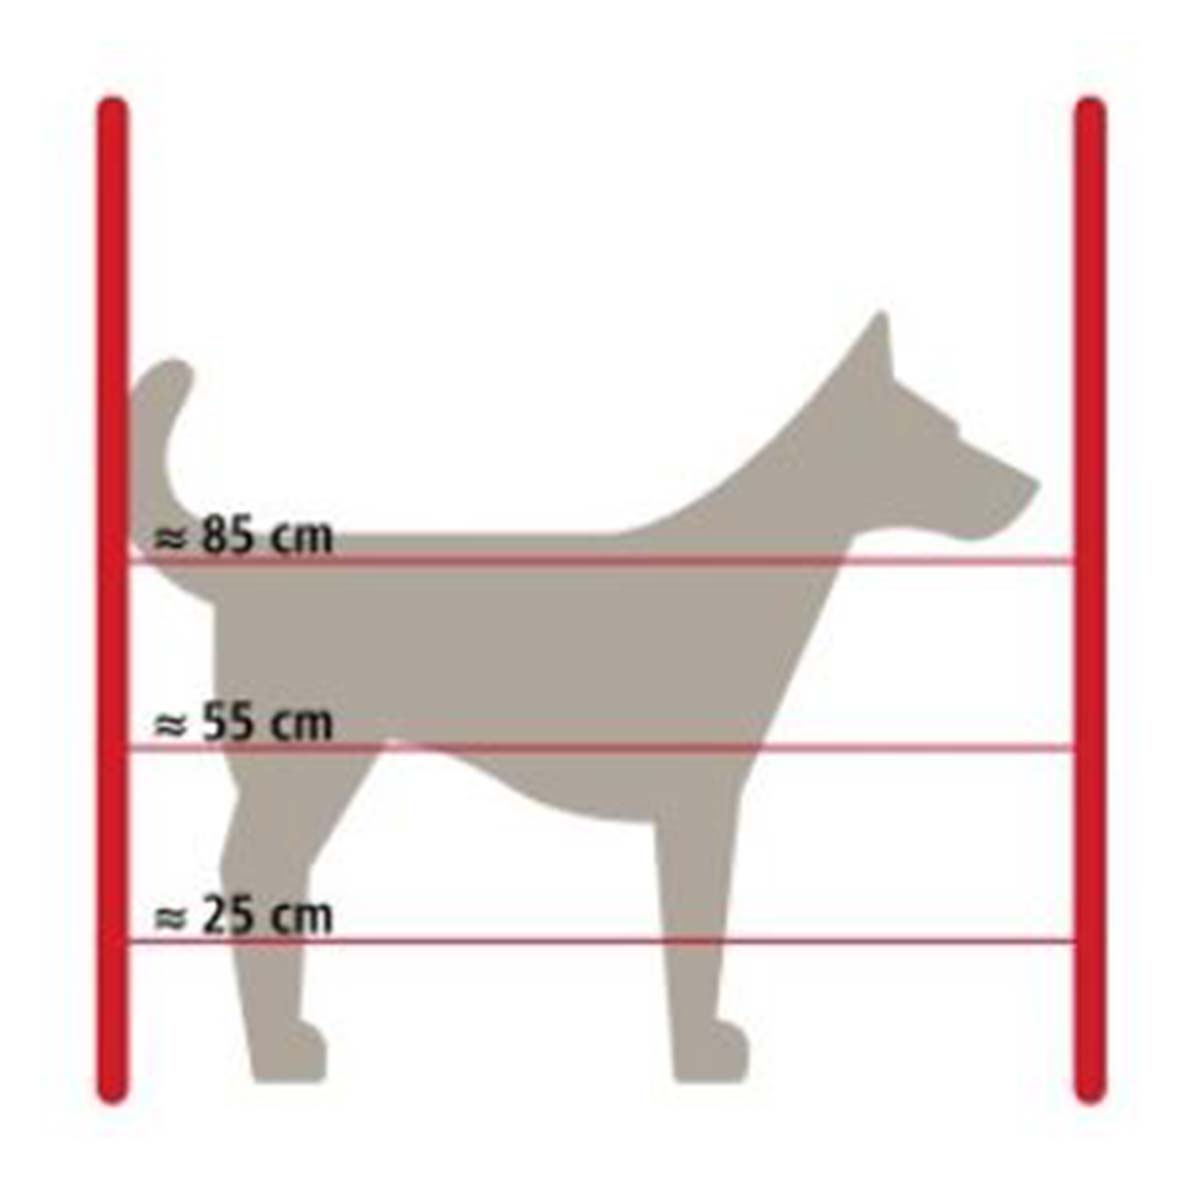 Hundezaun Komplett Set - Sicherheit für kleine, mittlere und große Hunde